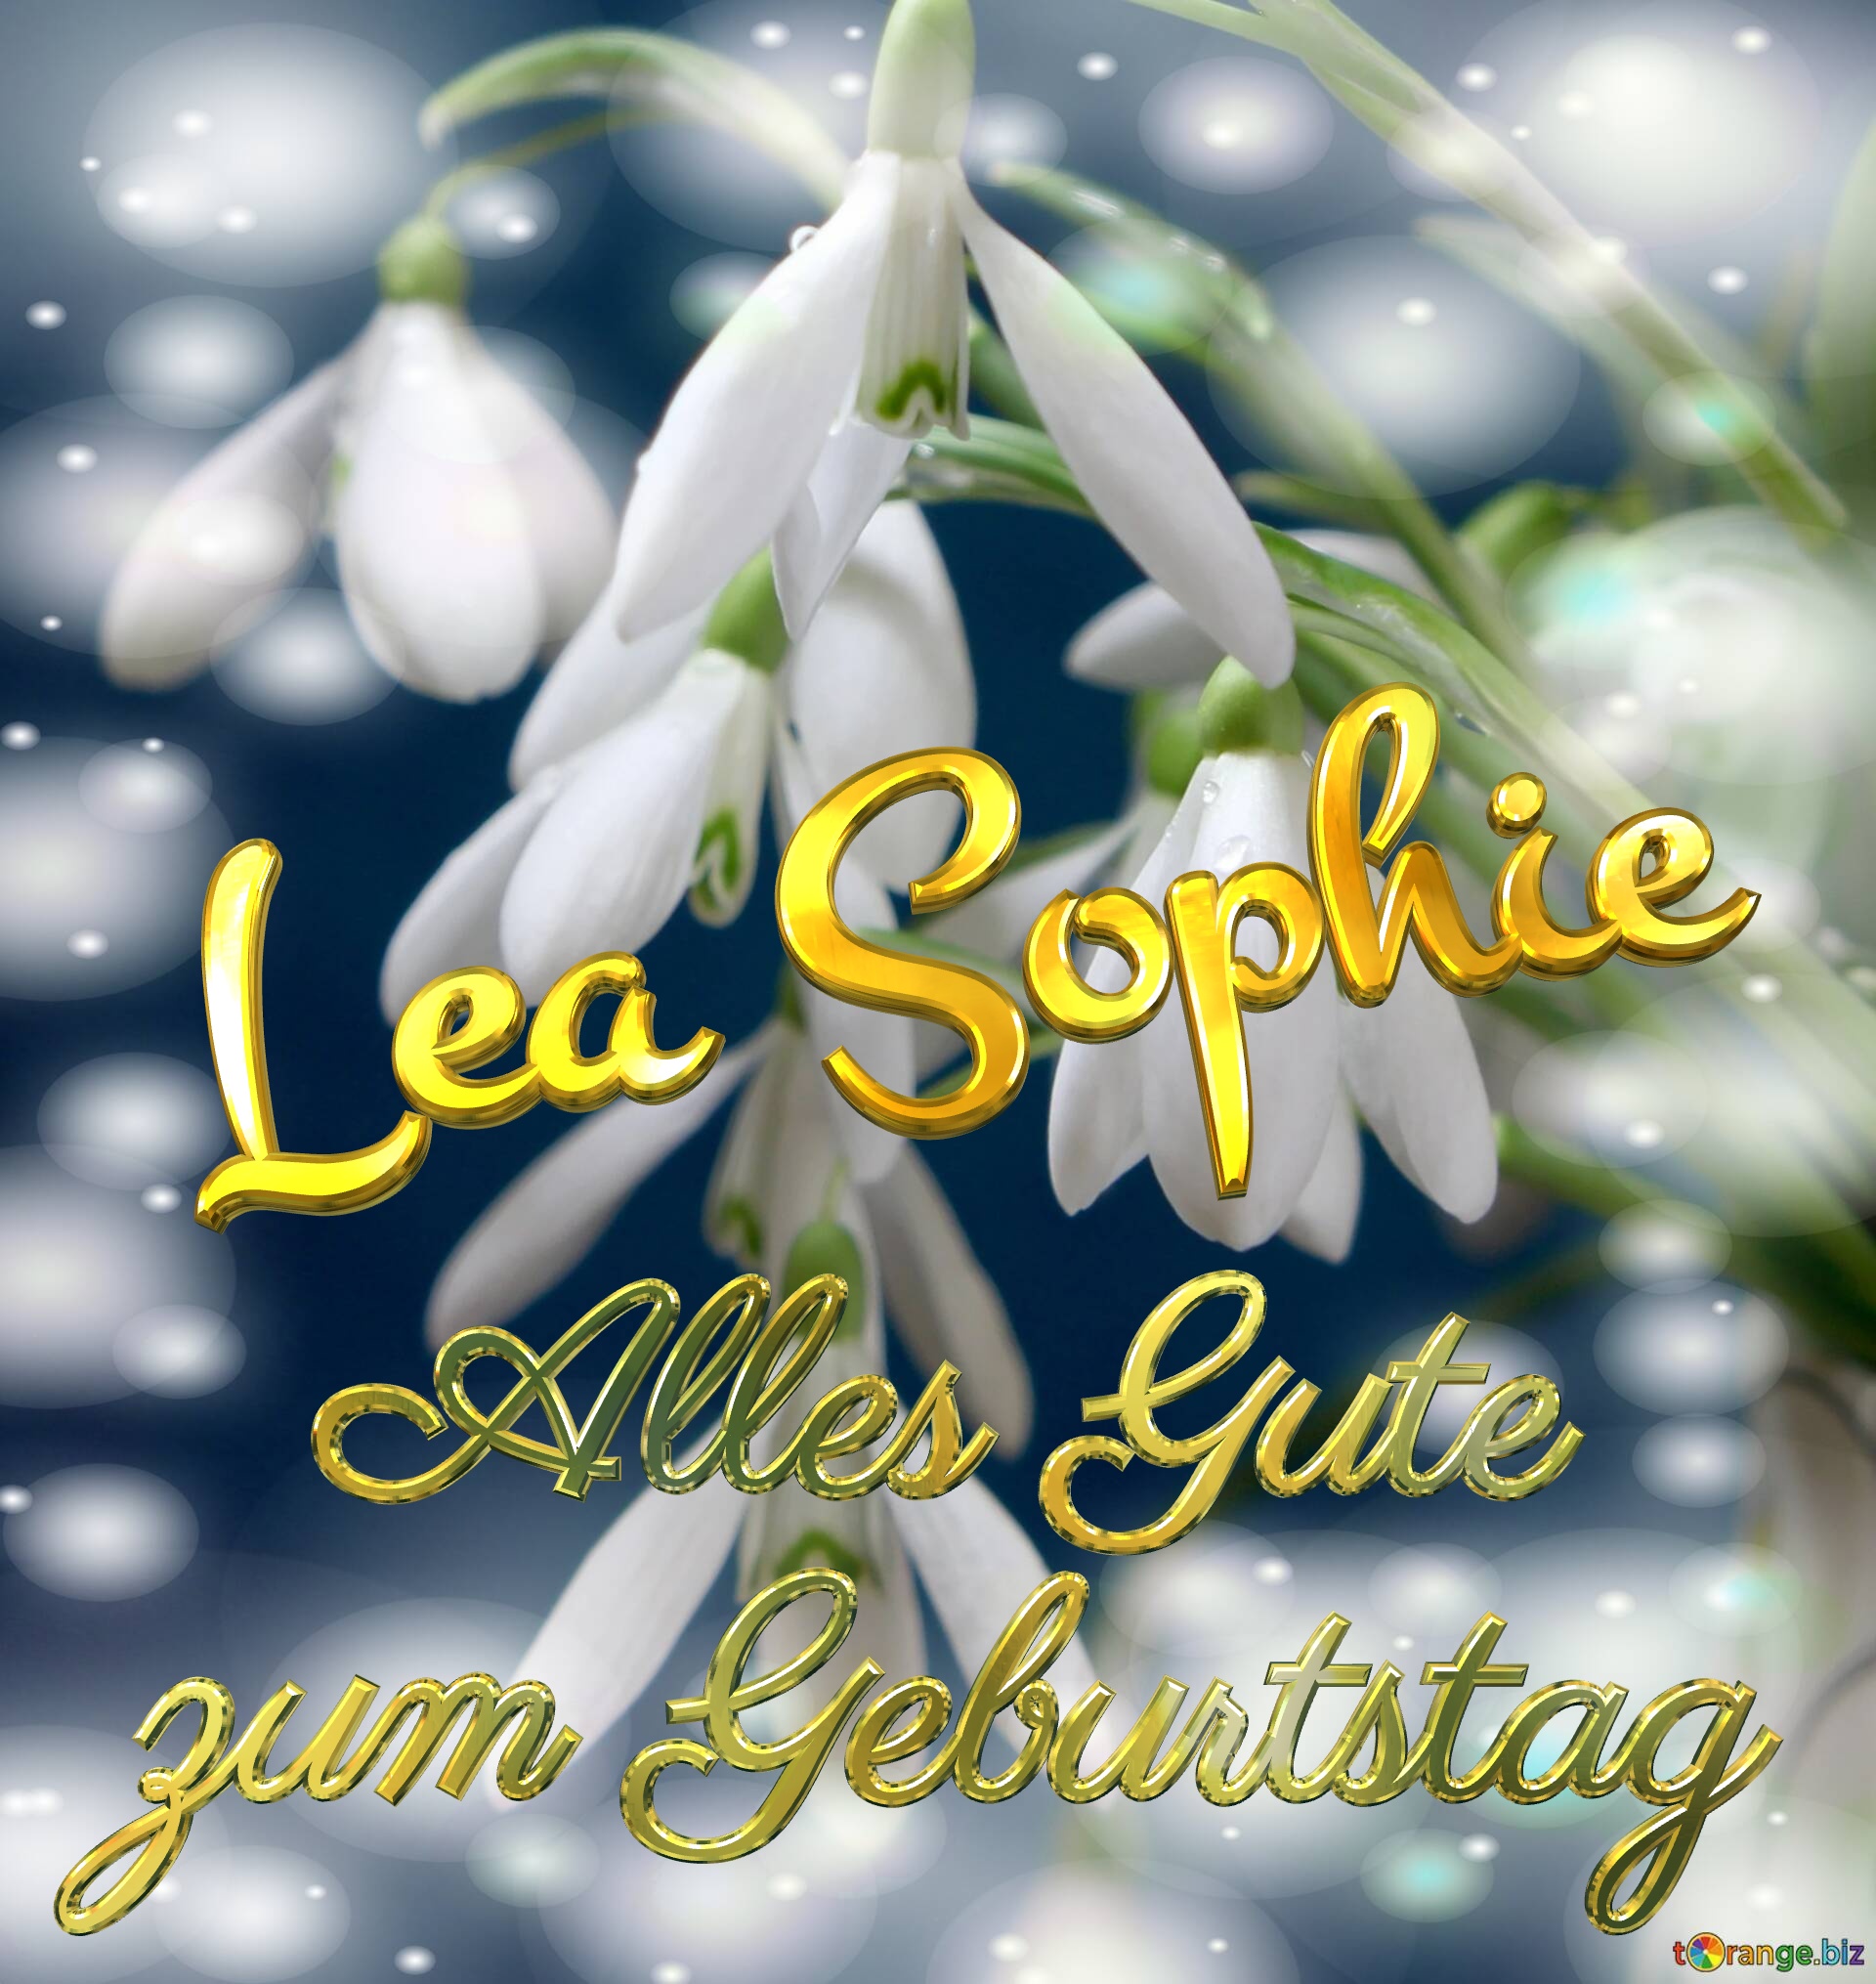 Lea Sophie Alles Gute  zum Geburtstag Blumenstrauß von Frühlingsblumen №0